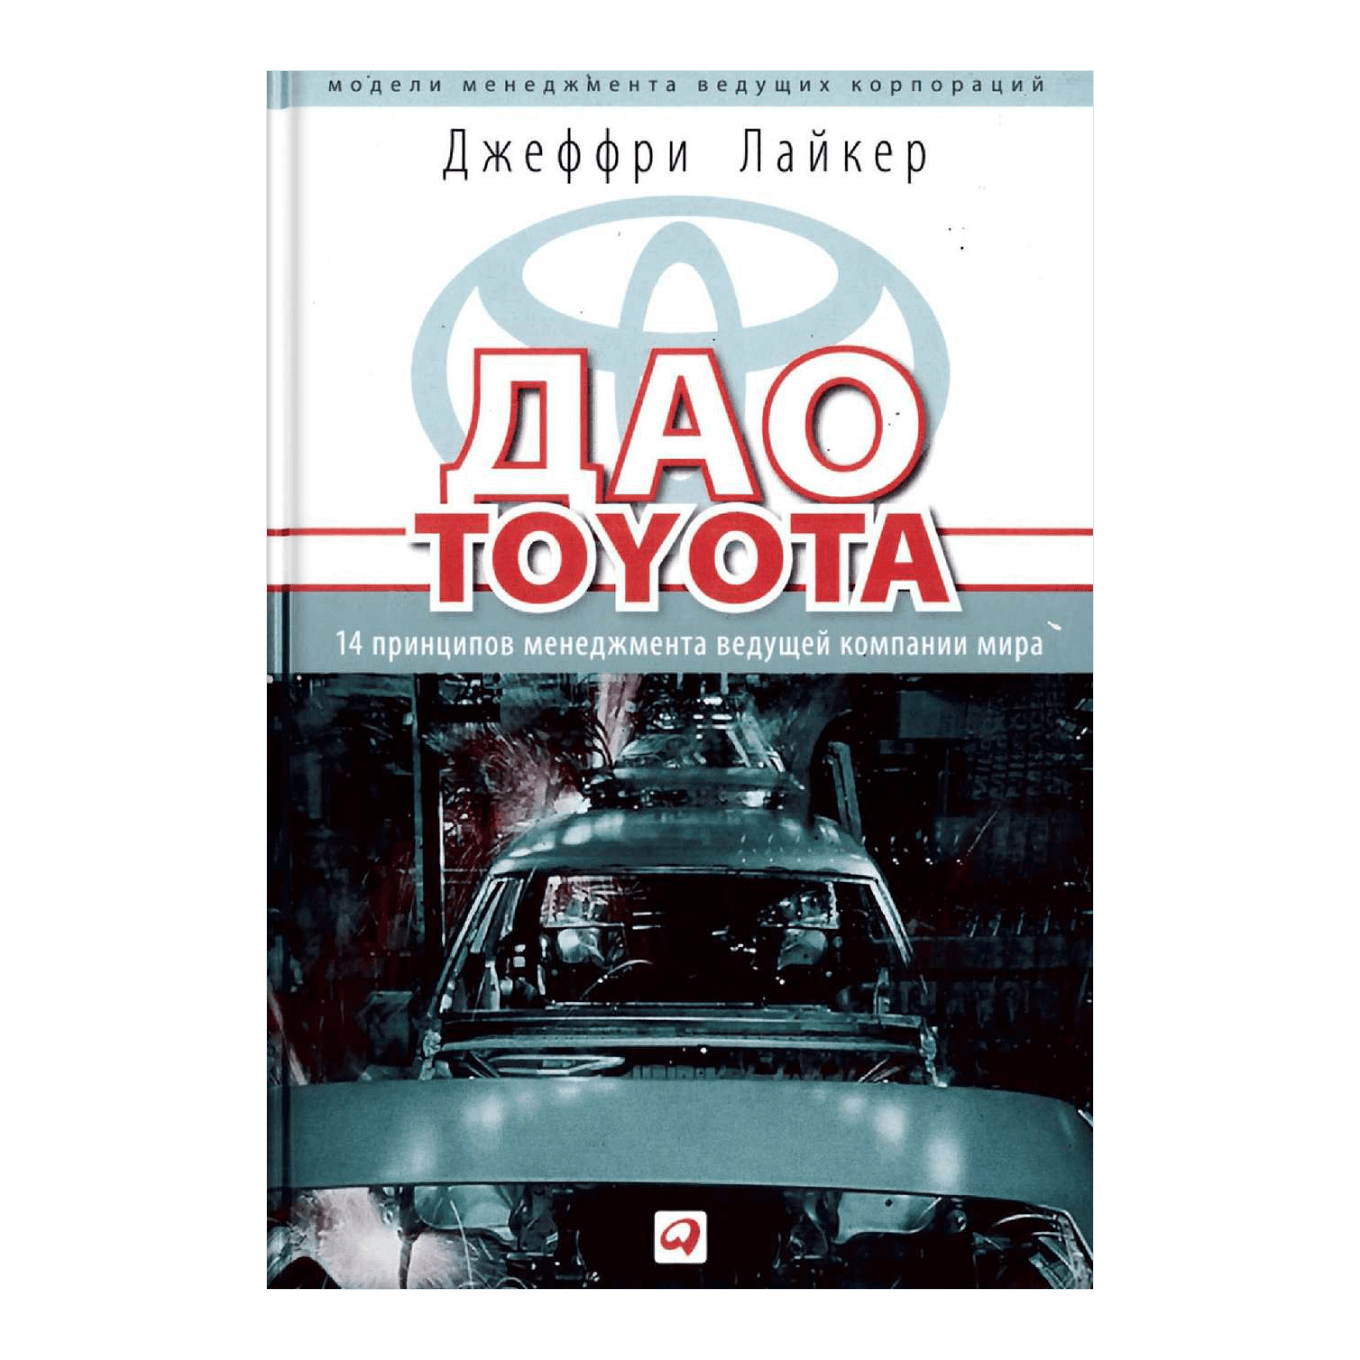 Дао тойота книга. Дао Toyota: 14 принципов менеджмента. Практика Дао Тойота книга. Принципы Дао Тойота.